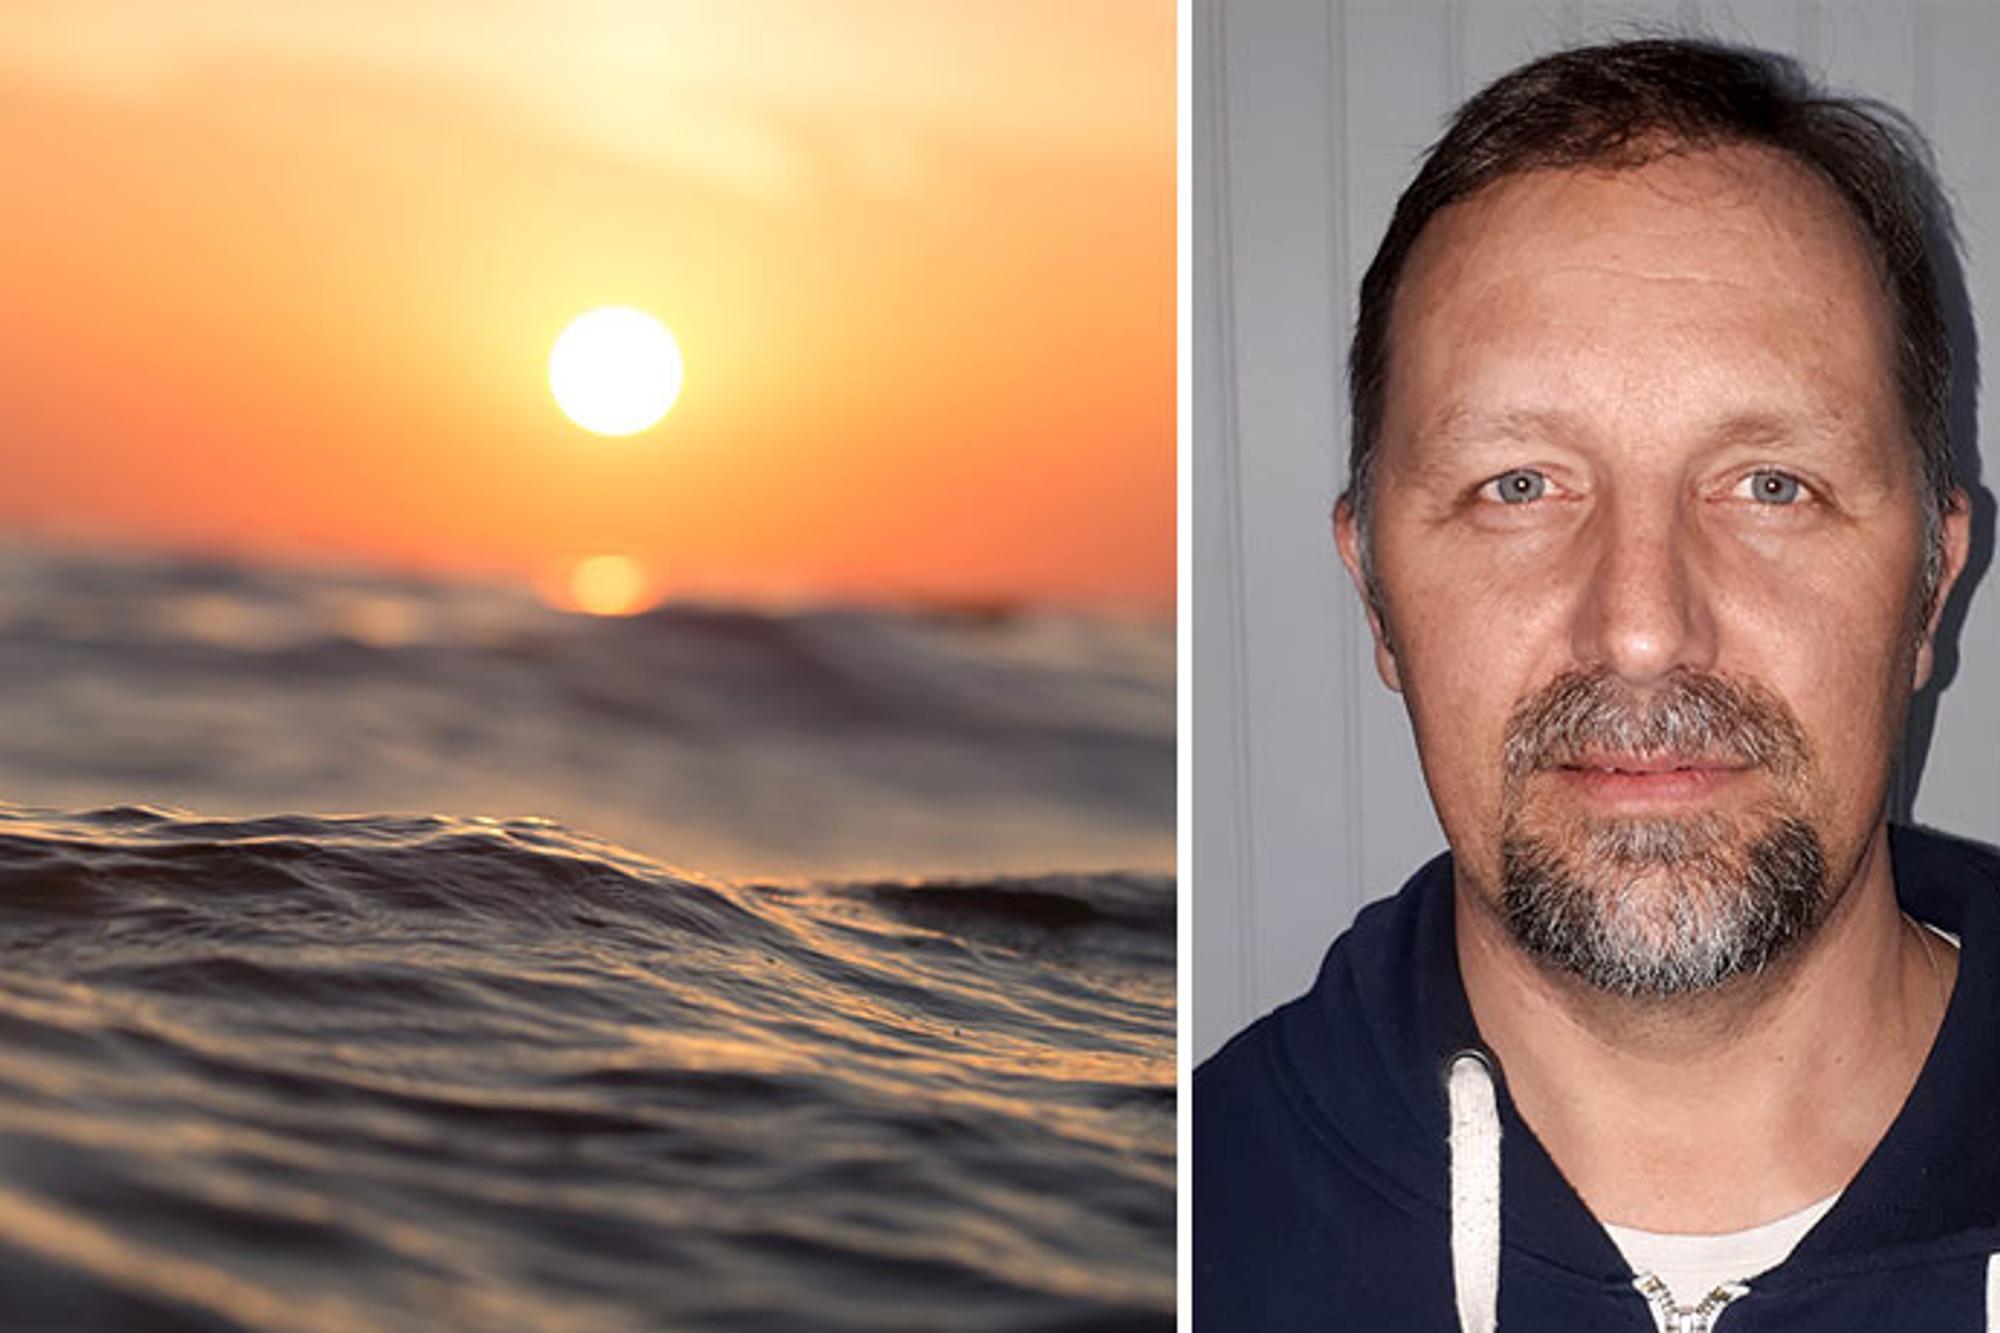 Till vänster: En våg på havet. I bakgrunden går solen ned. Till höger: Porträttbild av Robert Lindgren som ler mot kameran.